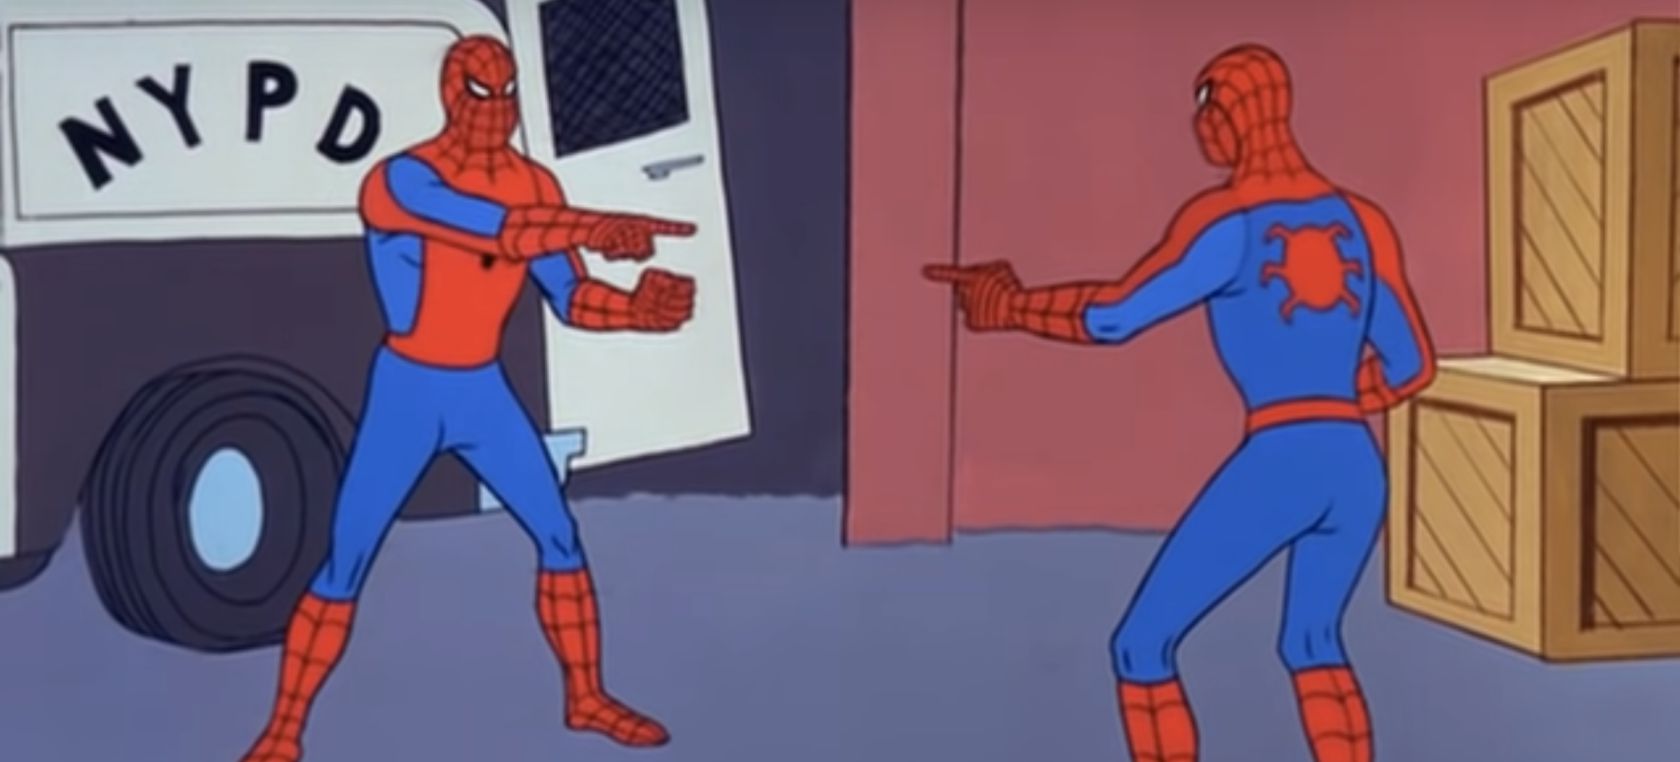 Tom Holland, Andrew Garfield y Tobey Maguire rompen internet recreando el meme más famoso de Spider-Man